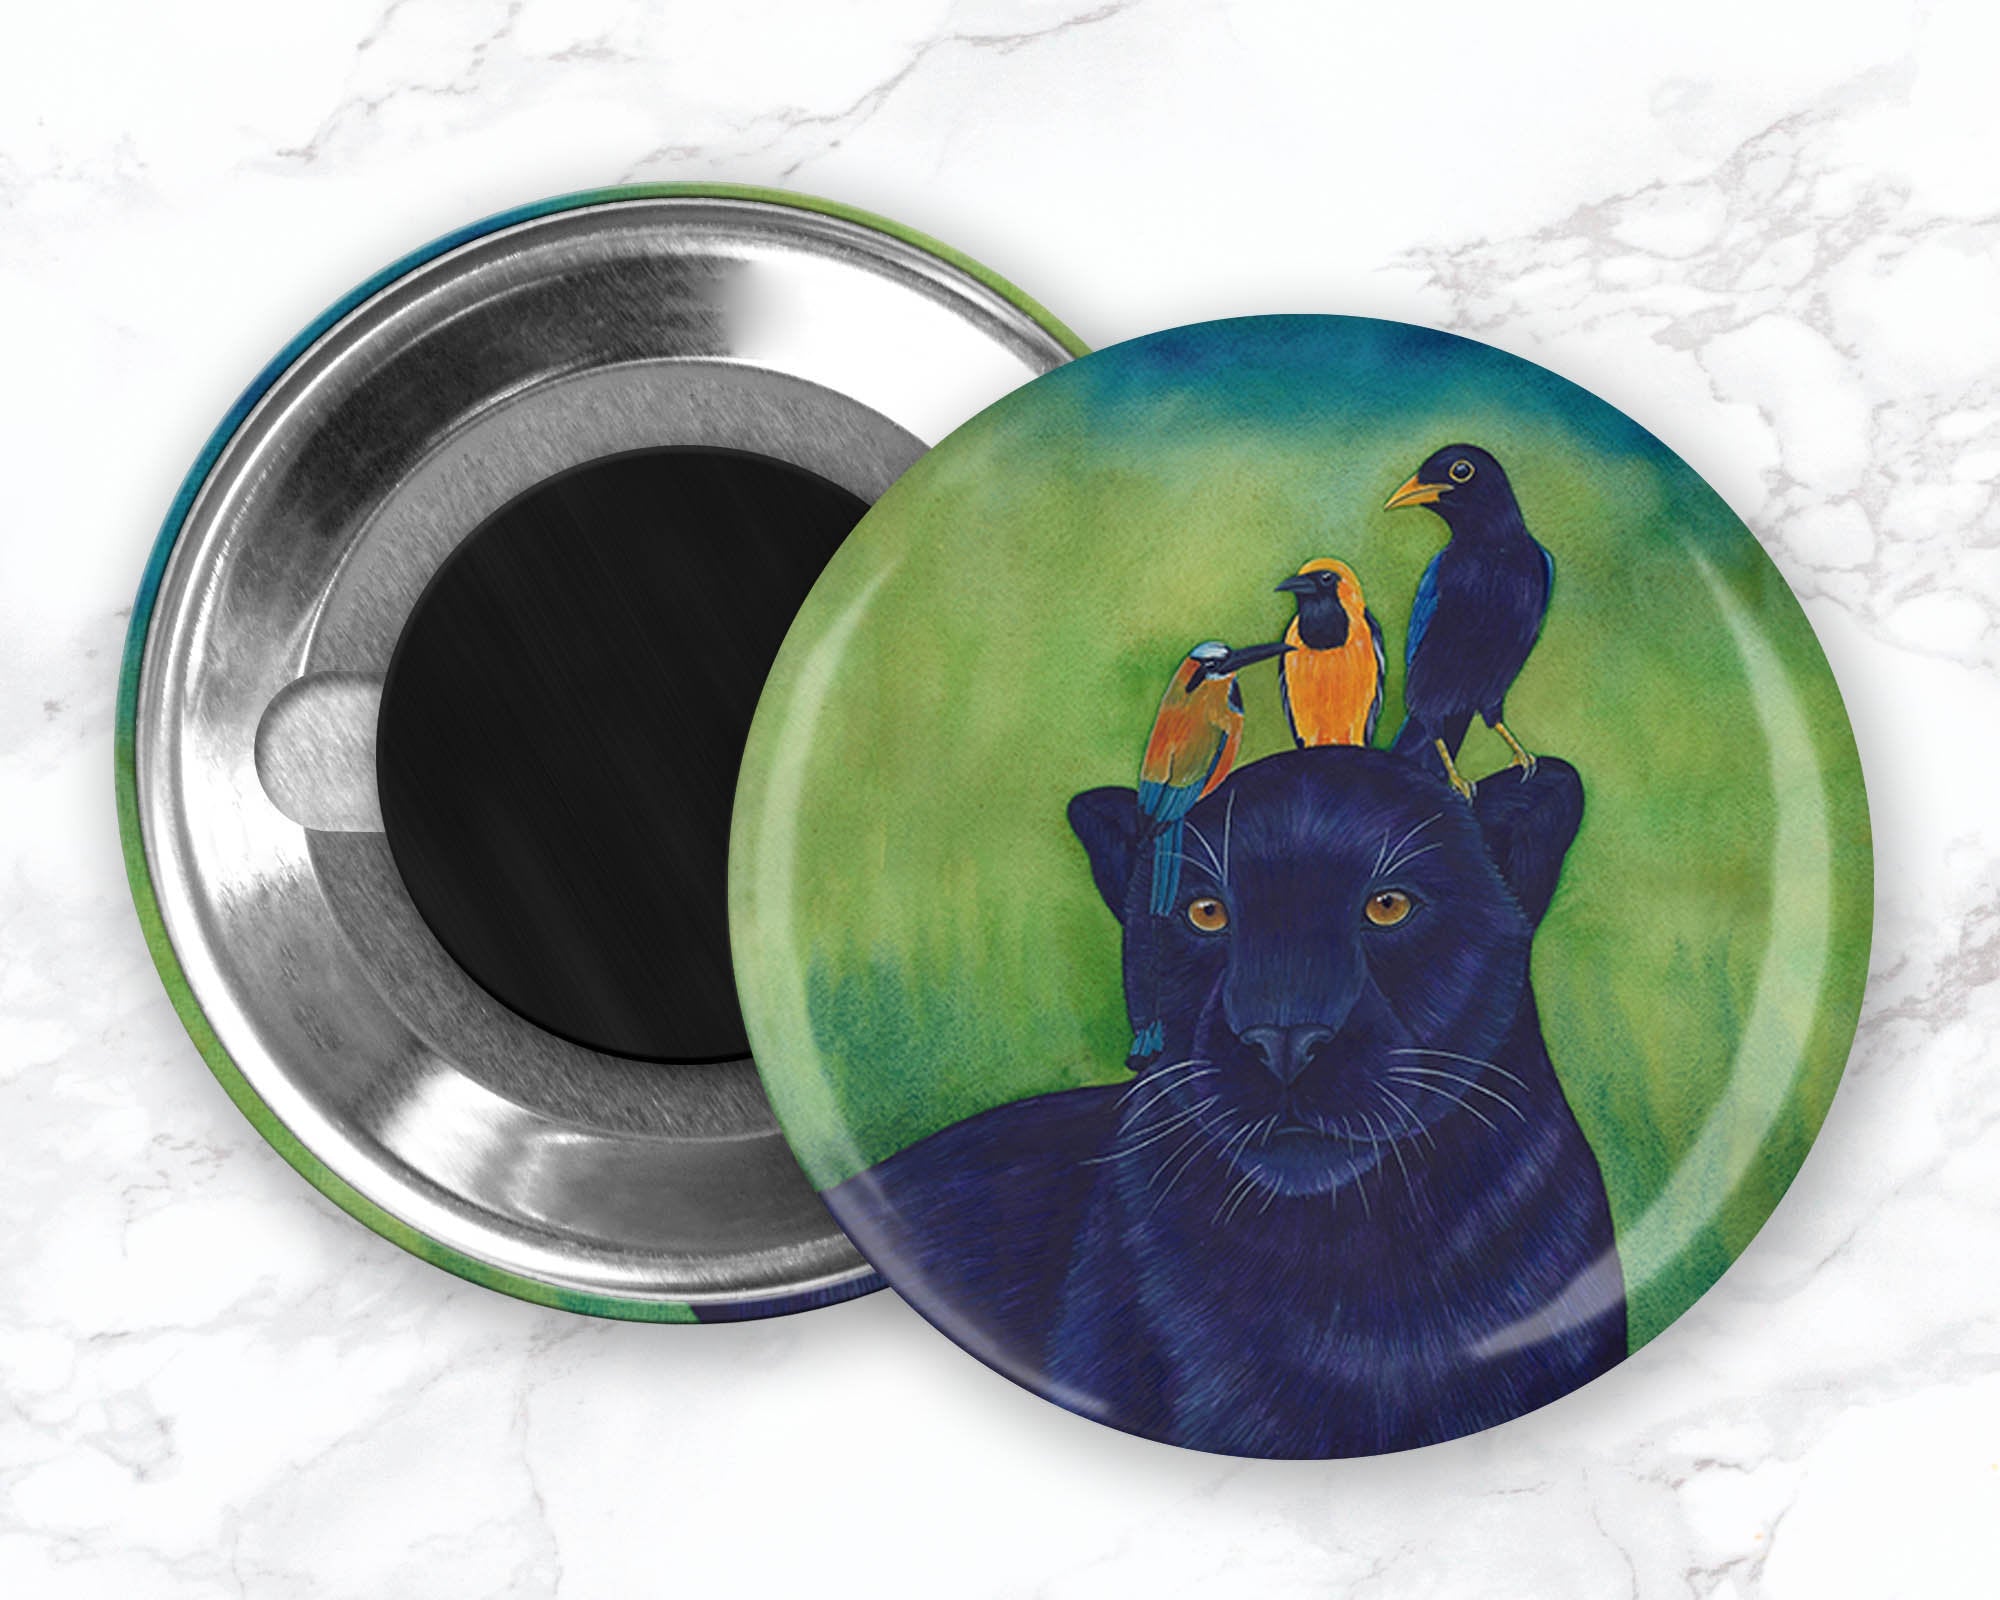 Black Jaguar Magnet, Black Panther Magnet, Bird Magnet, Watercolor Animal Magnet, Fridge Magnet, Cute Animal Magnet, Wild Animal Magnet